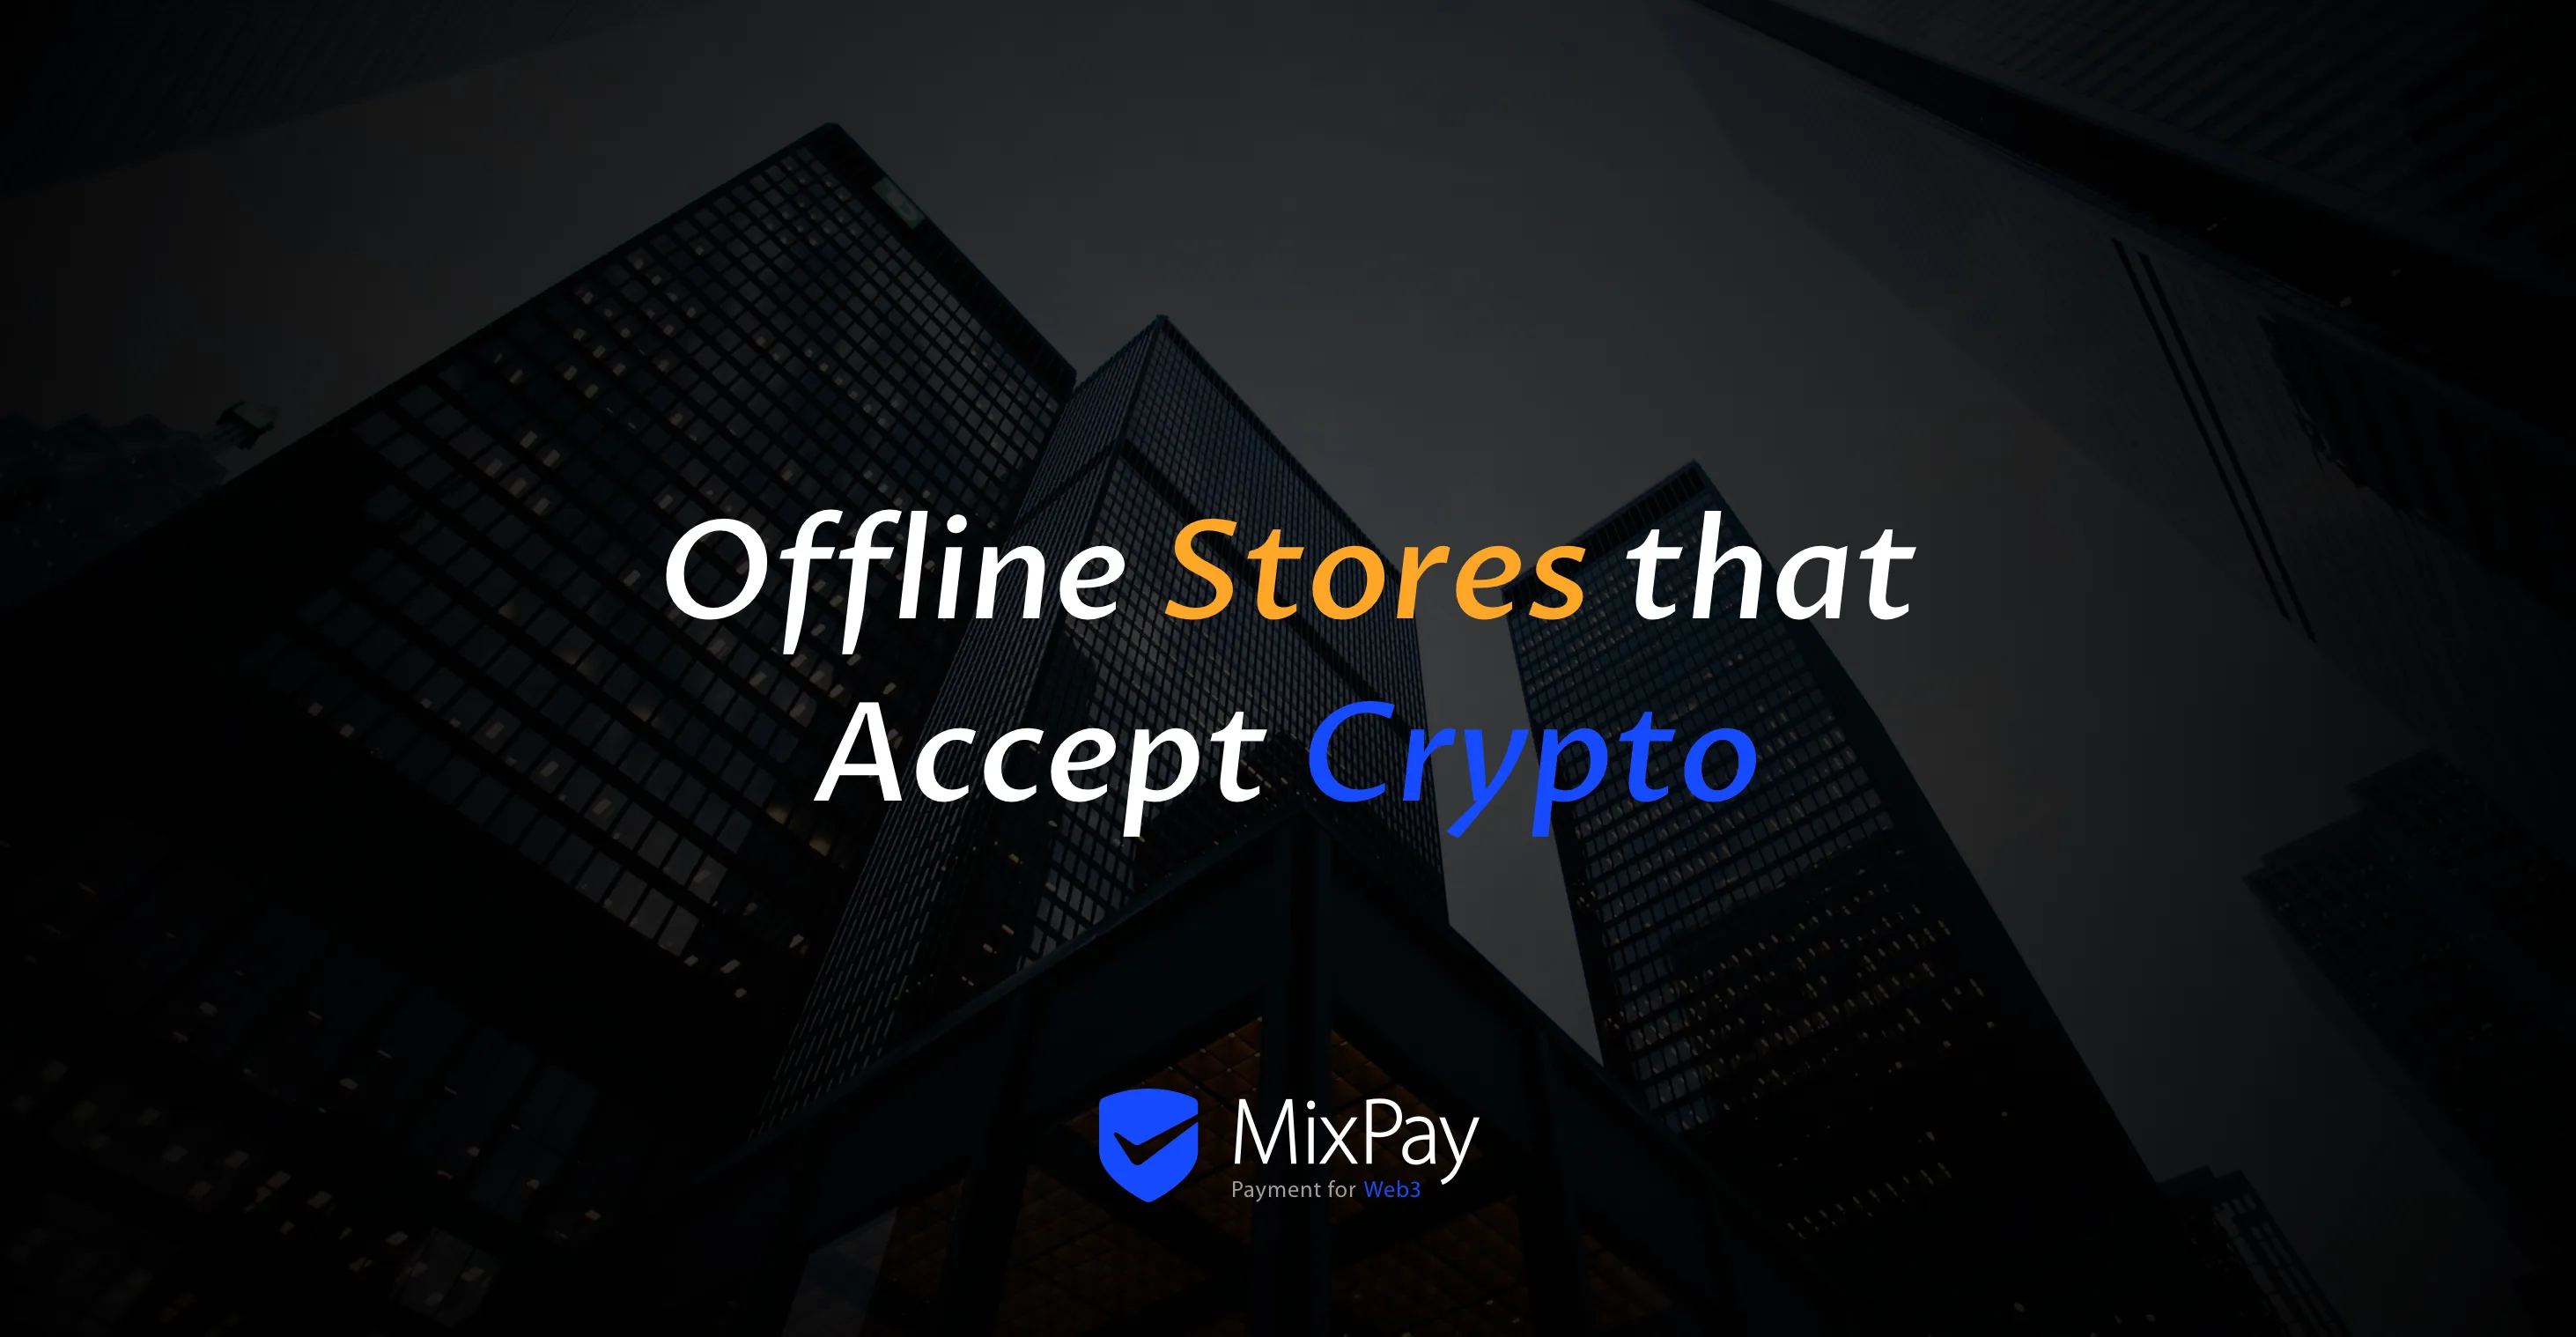 Offline winkels die cryptocurrency accepteren met MixPay